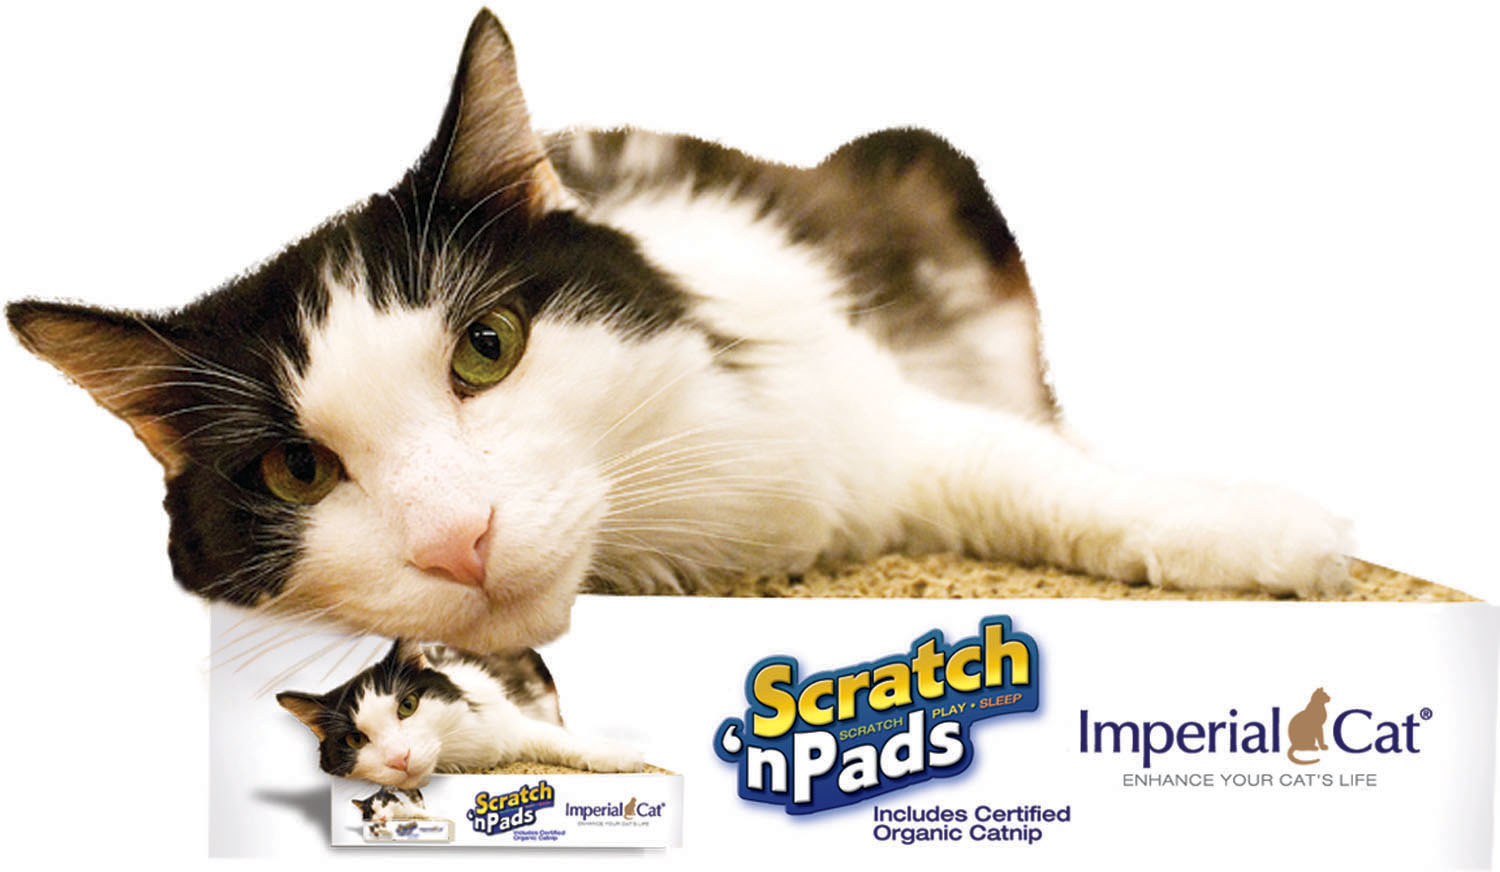 Imperial Cat - Scratch 'n Pads